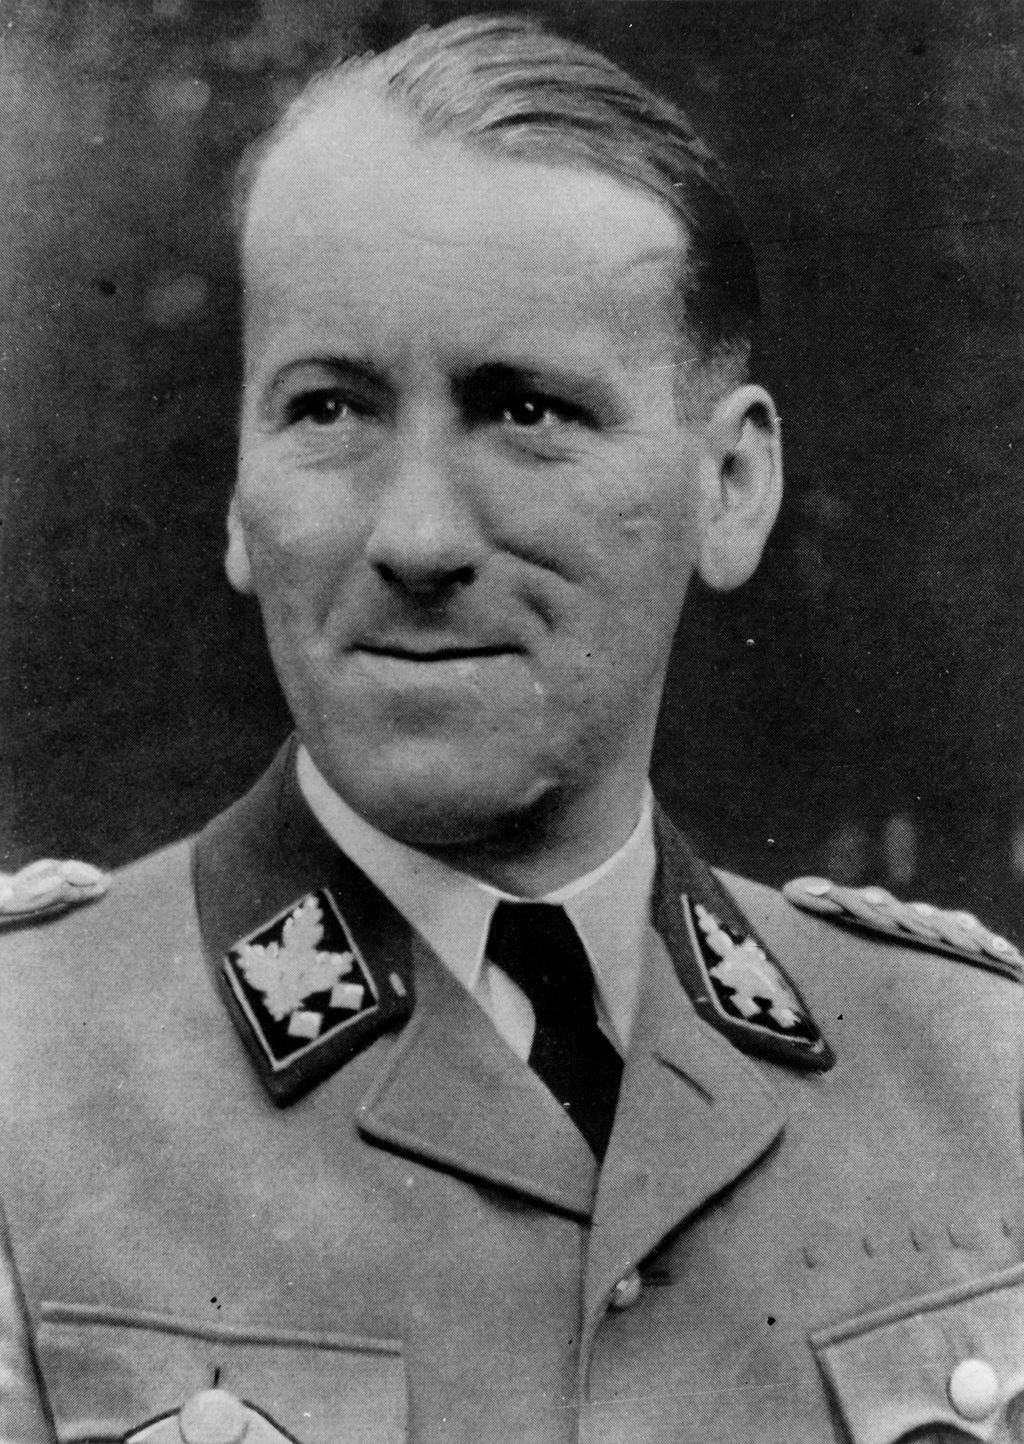 Foto: Kaltenbrunner, Ernst, 1940-1945